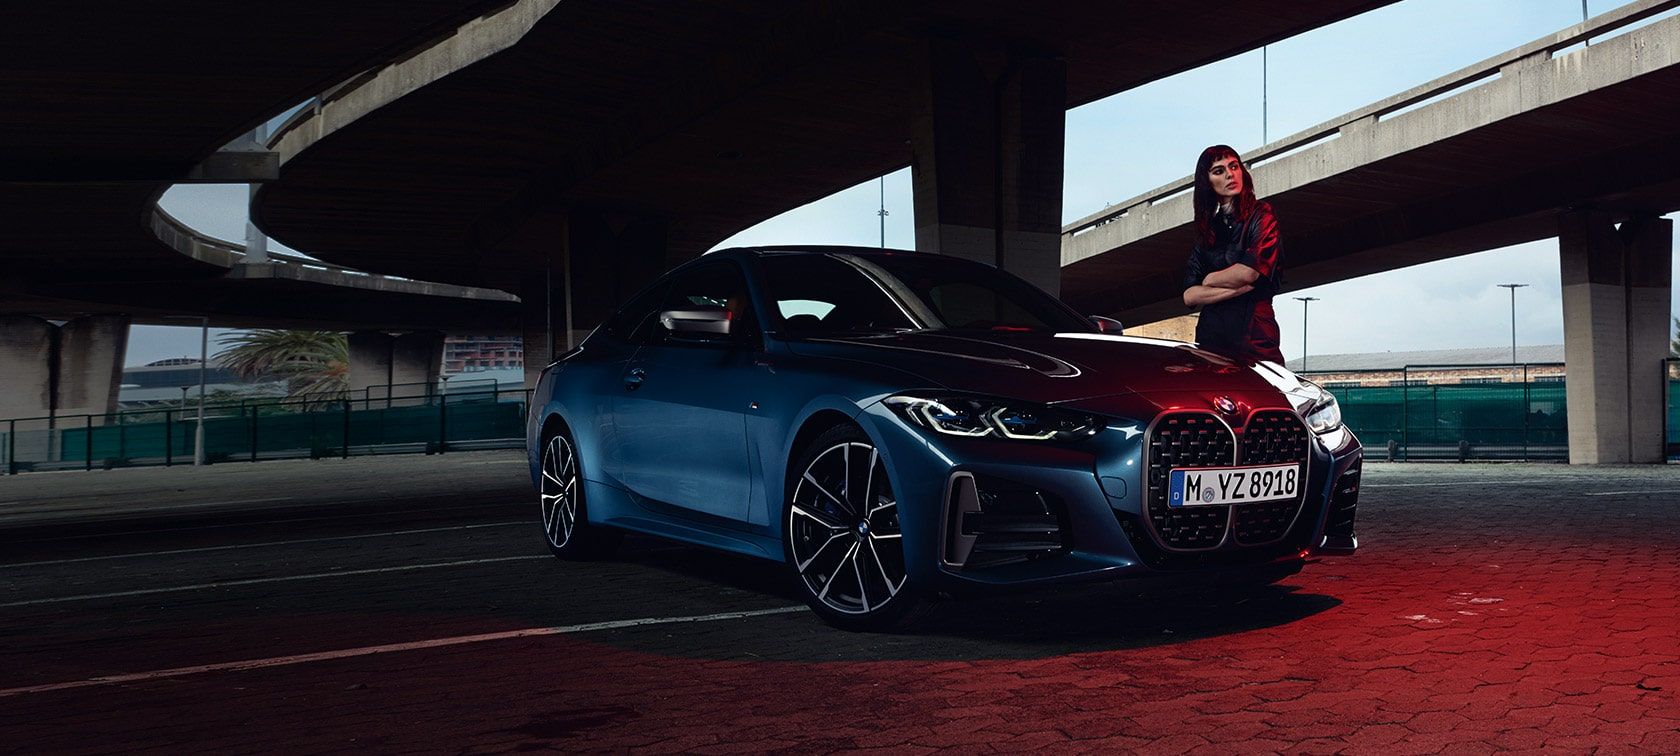 Harga BMW 4 Series Coupe Terbaru, Spesifikasi dan Interior 2022!